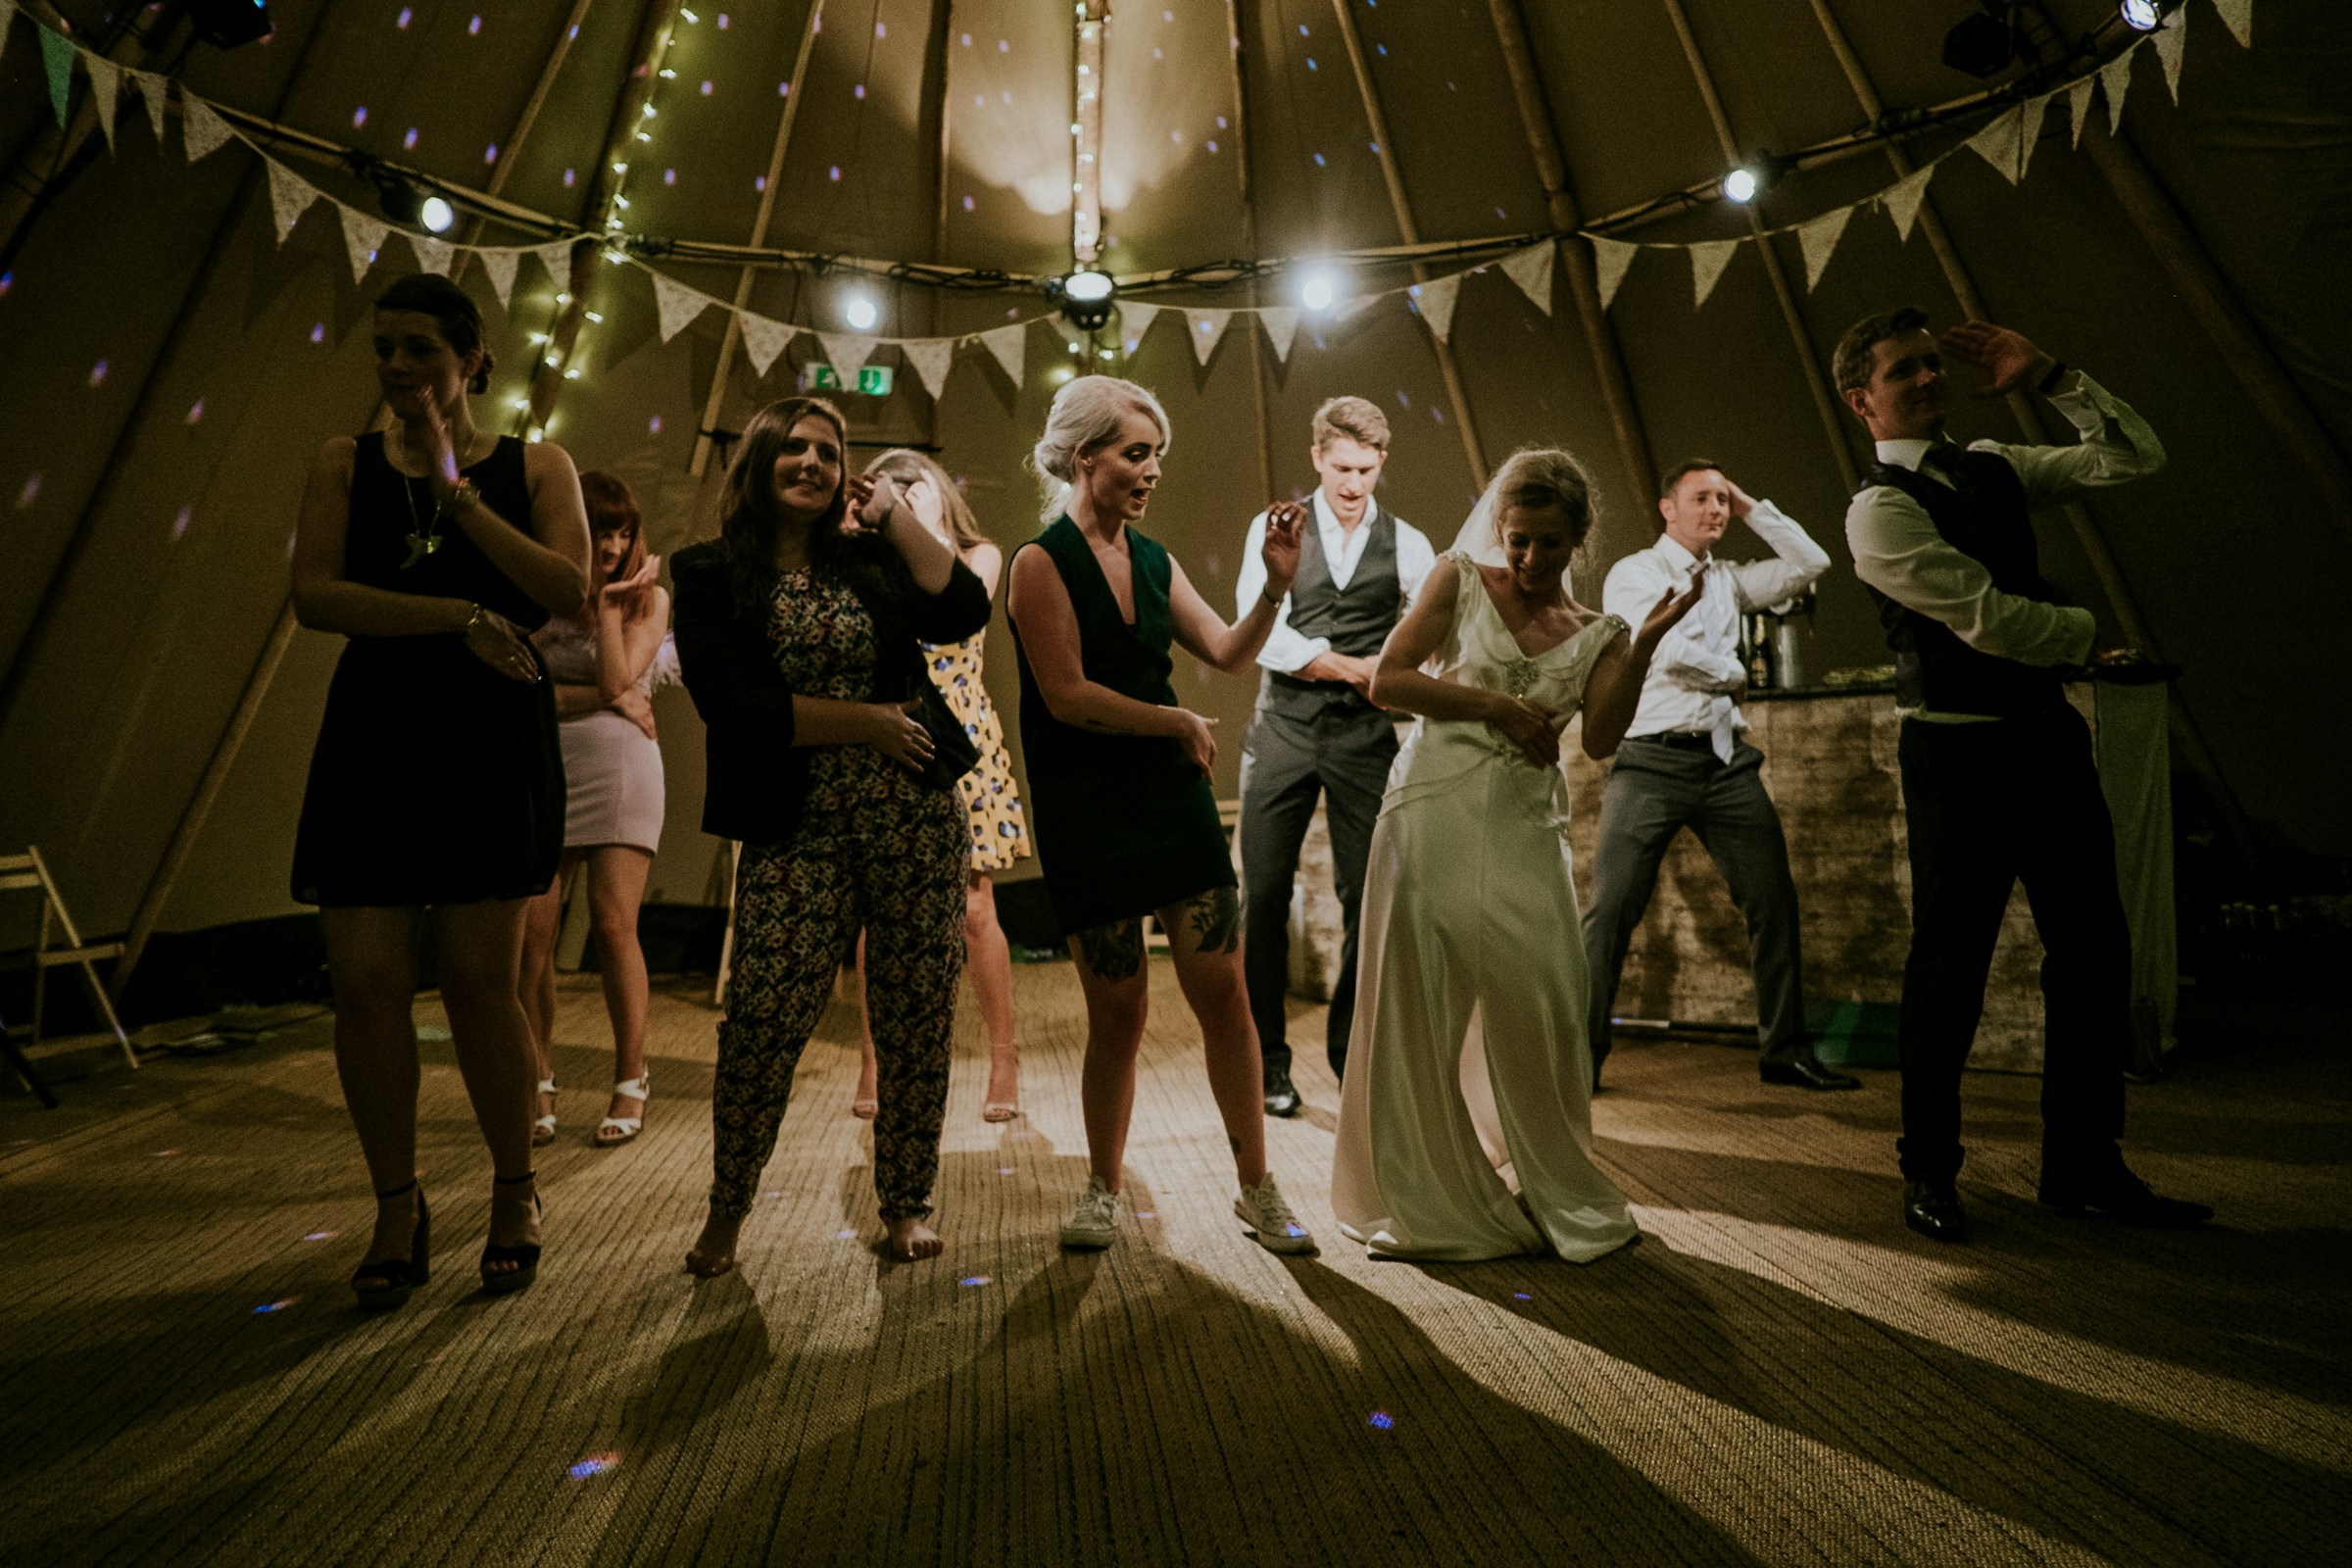 Tanzende Menschen auf einer Hochzeit | Quelle: Unsplash